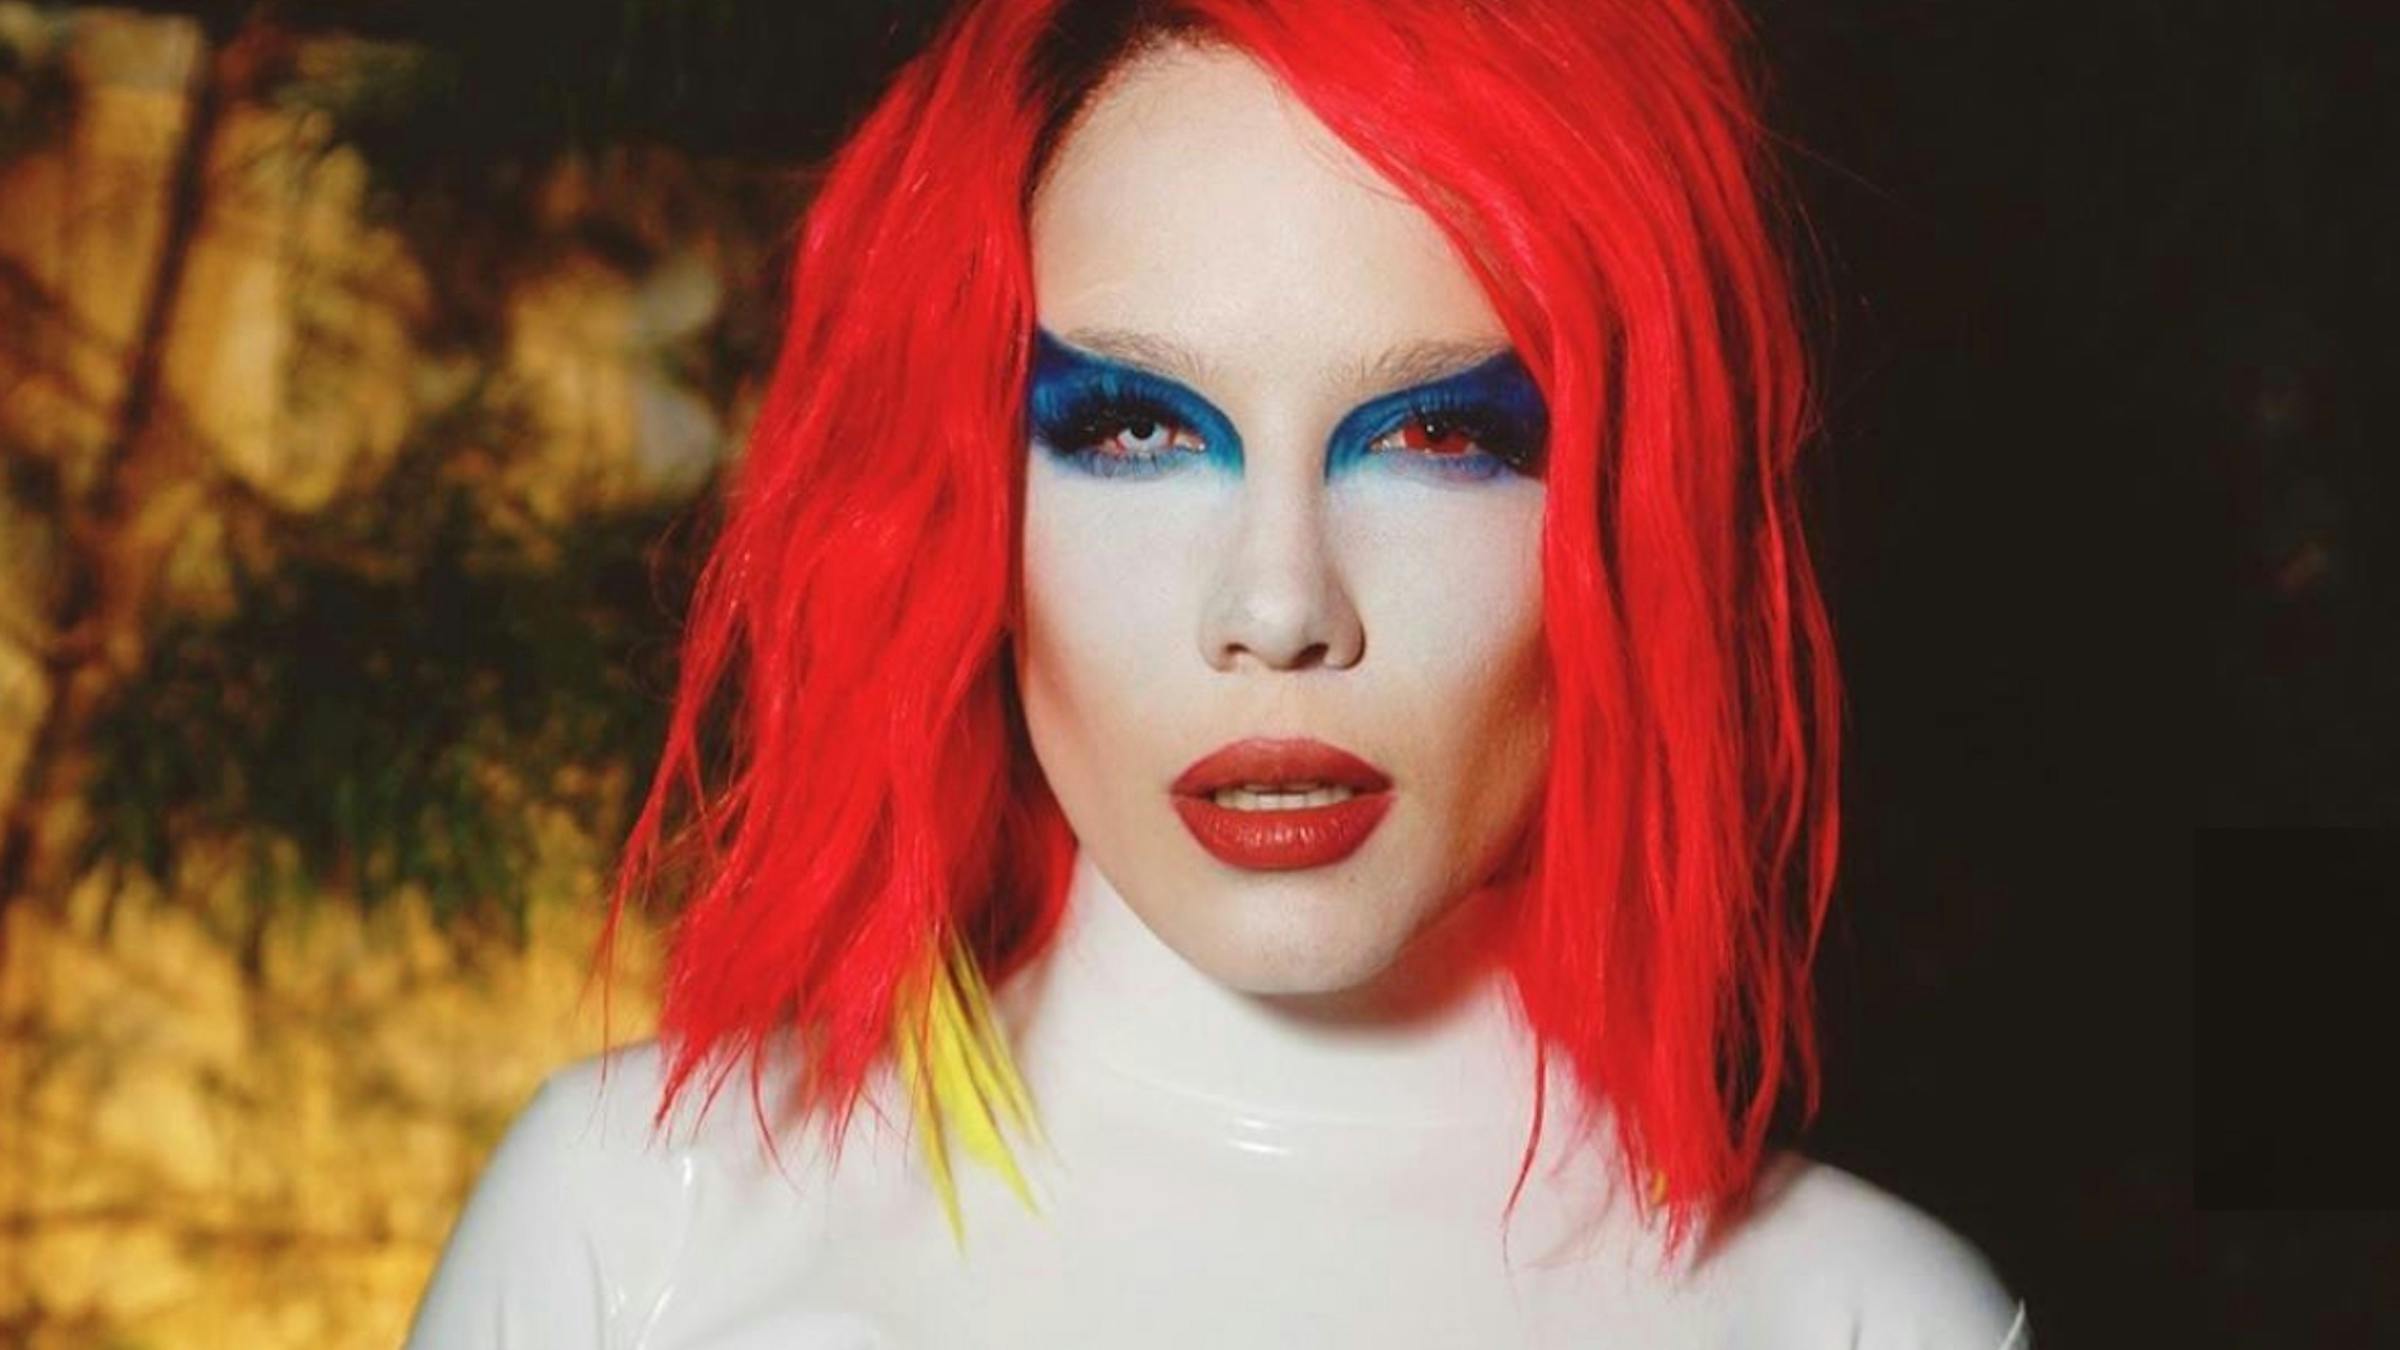 Halsey's Marilyn Manson Halloween Costume Is On Point